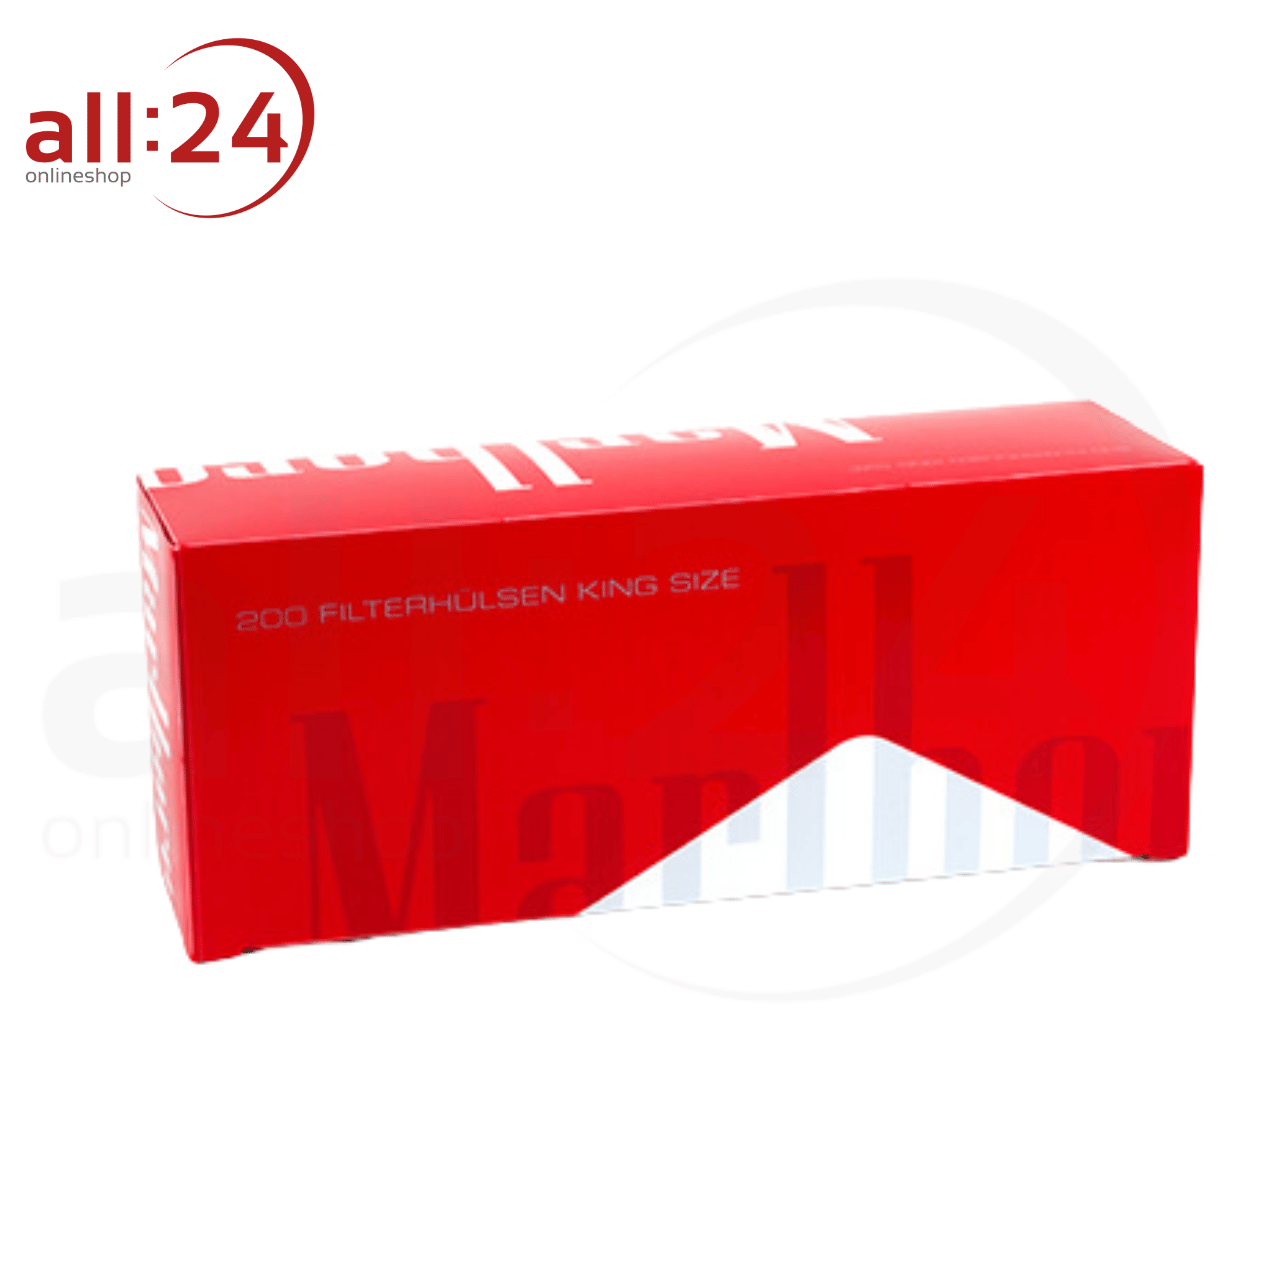 Marlboro Red Filterhülsen - 1.000 Stück in 5 praktischen Packungen à 200 